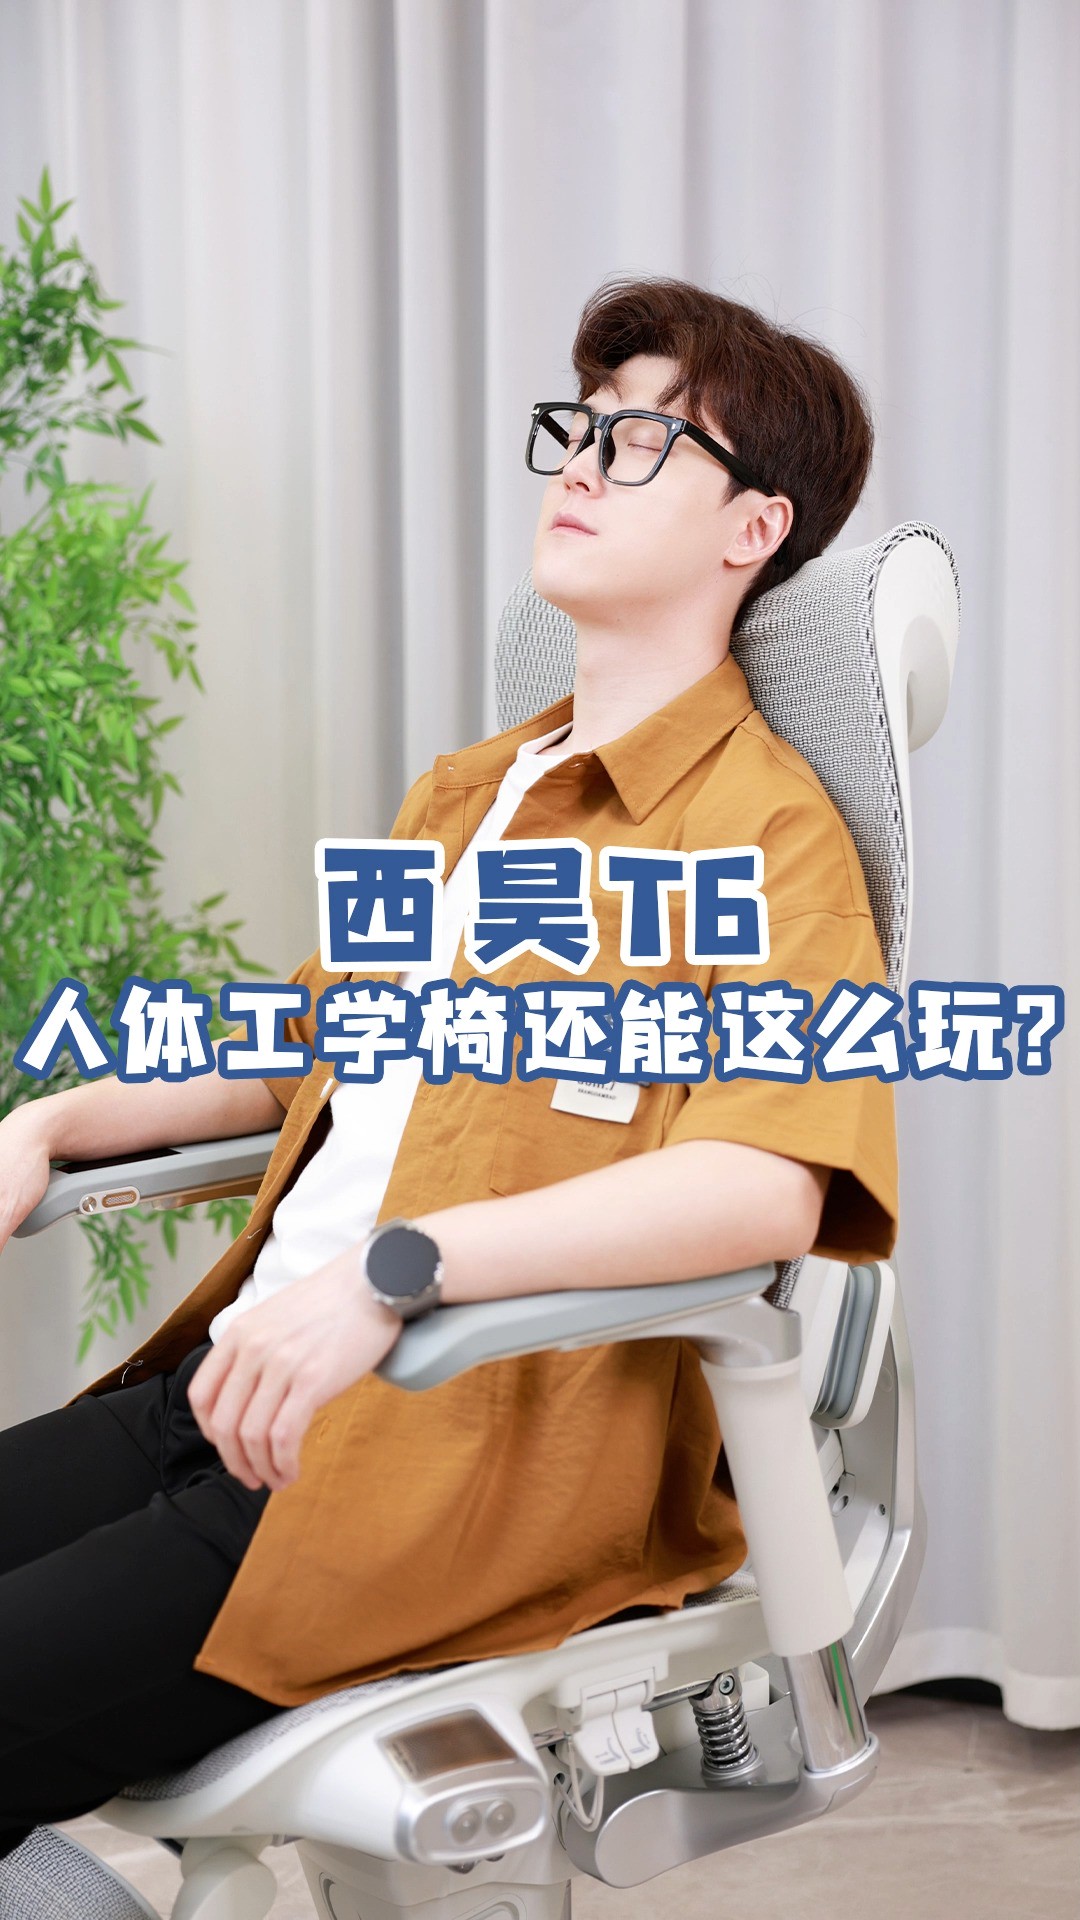 一把椅子卖到10000块！你的第一感受是……？#西昊T6#花十年烧一亿做一把椅子#智能人体工学椅